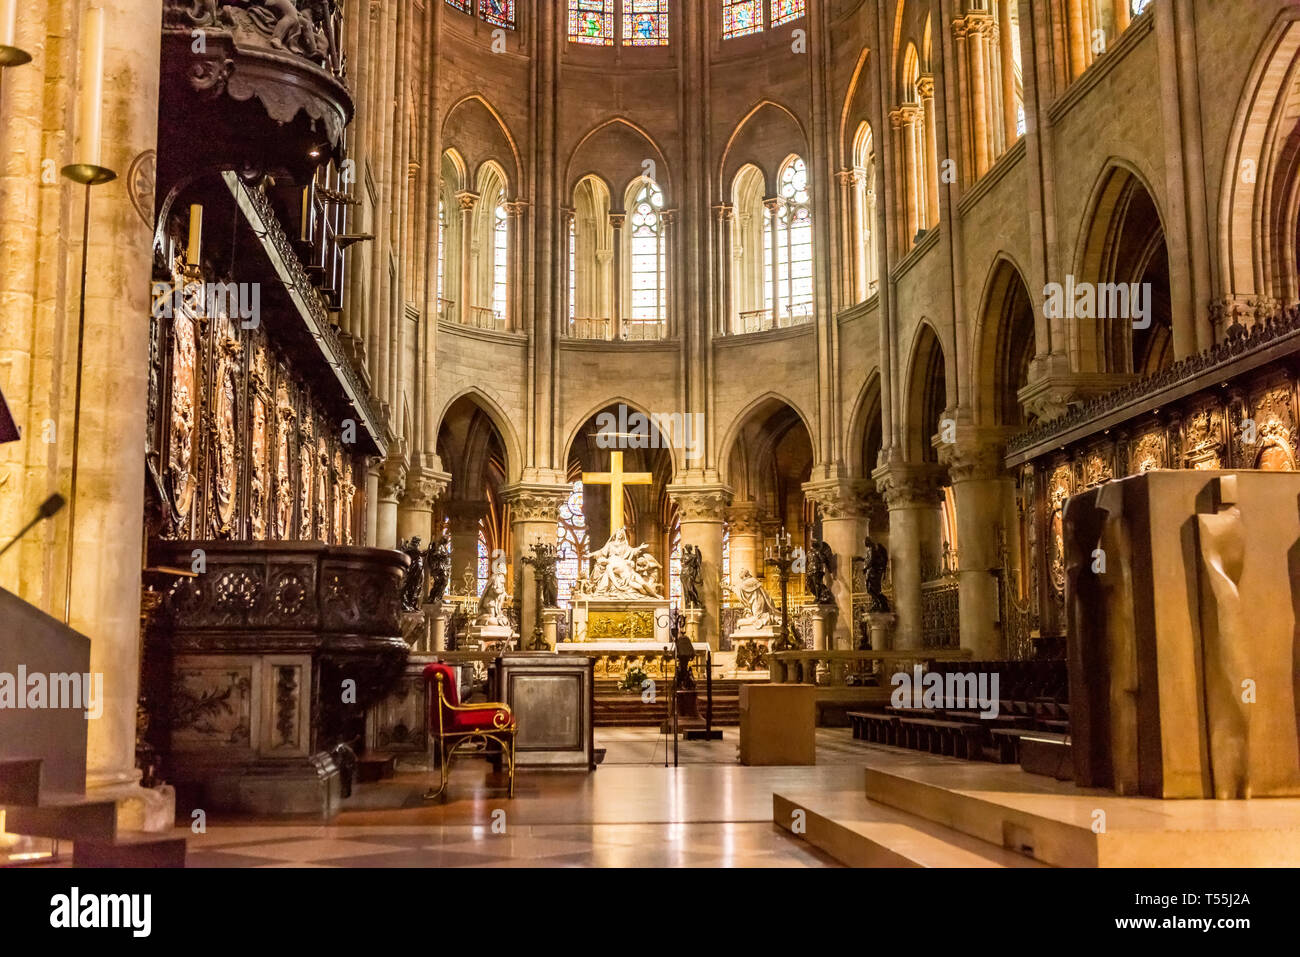 Parigi, Francia interno della cattedrale di Notre Dame de Paris. La cattedrale di Notre Dame è una delle principali destinazioni turistiche di Parigi Foto Stock